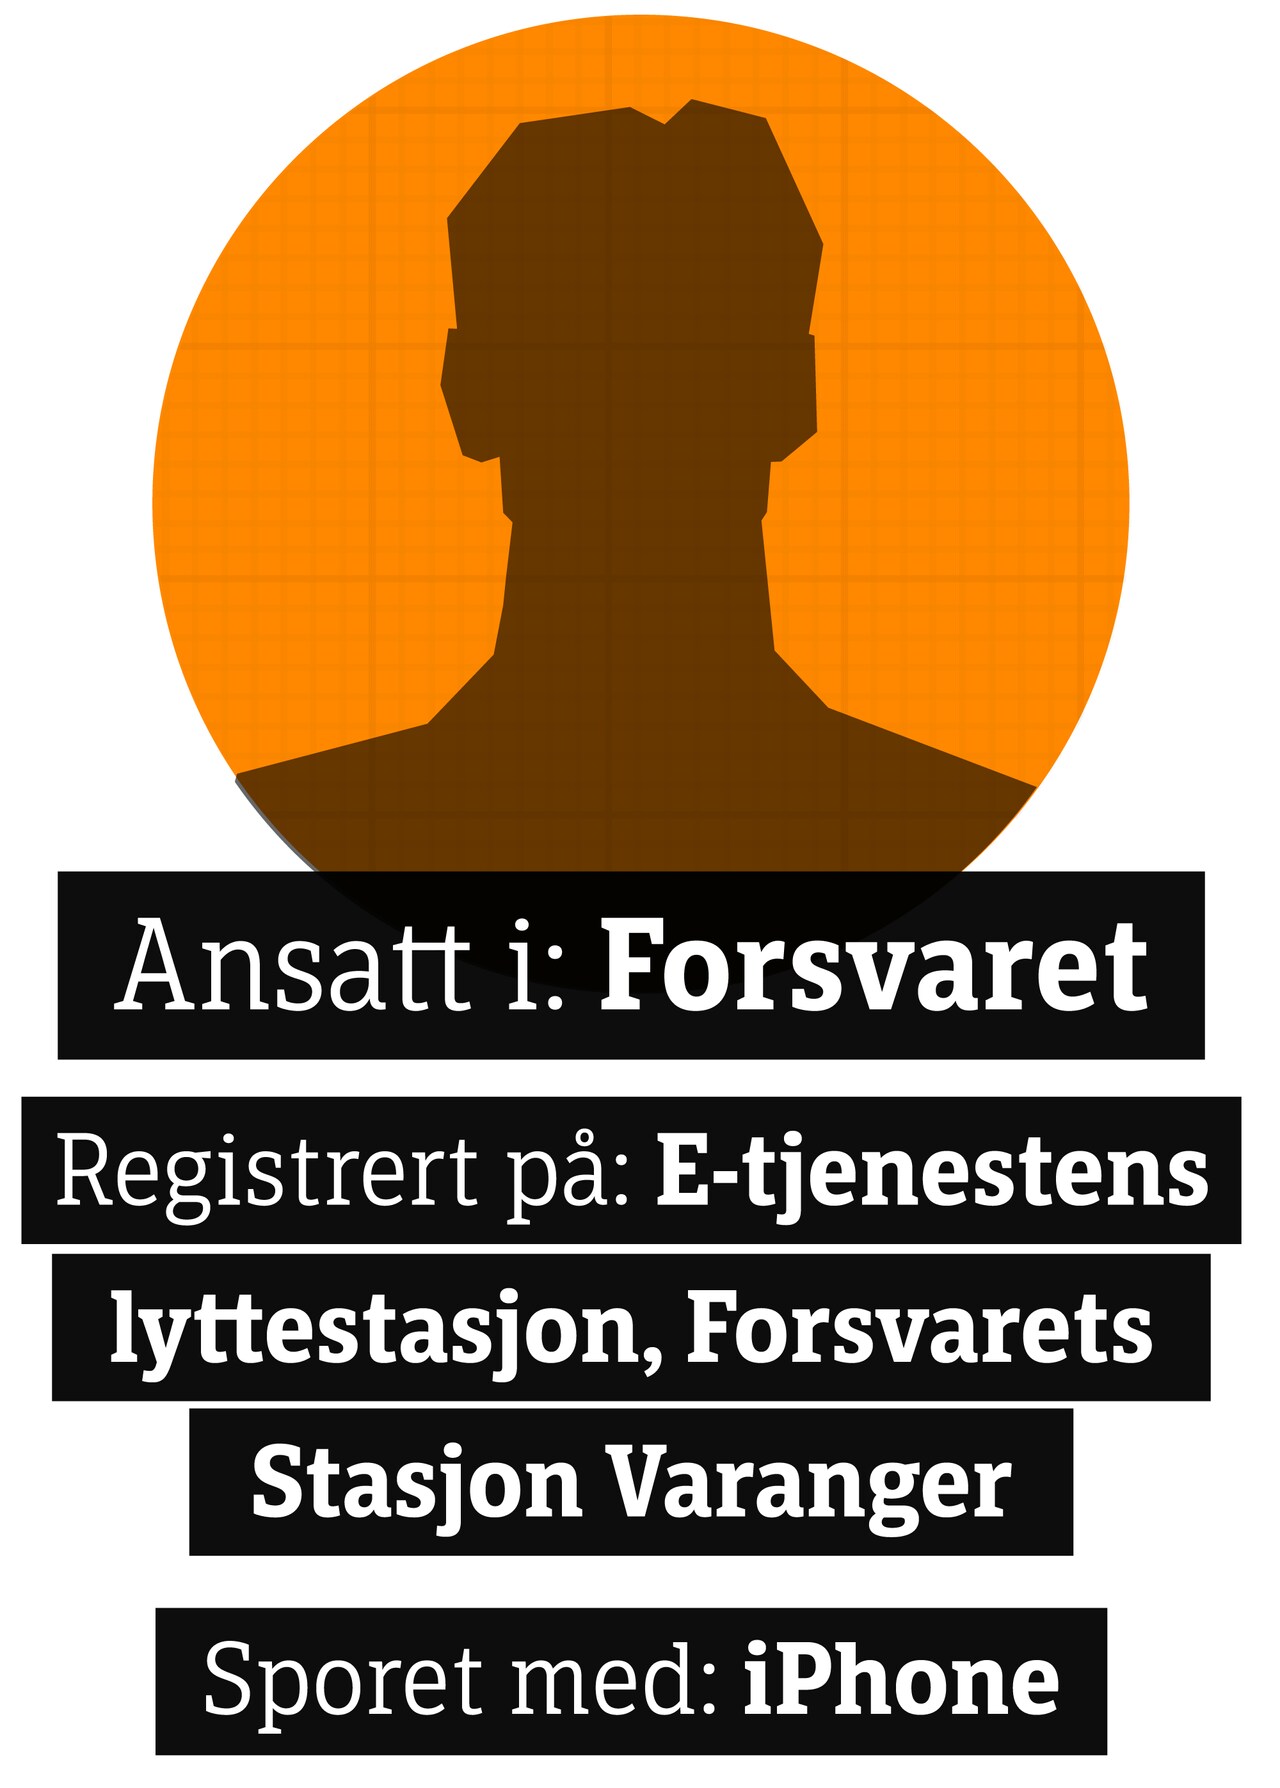 Anonym silhuett med teksten: Ansatt i Forsvaret, Registrert på E-tjenesten lyttestasjon, Forsvarets Stasjon Varanger, sporet med IPhone